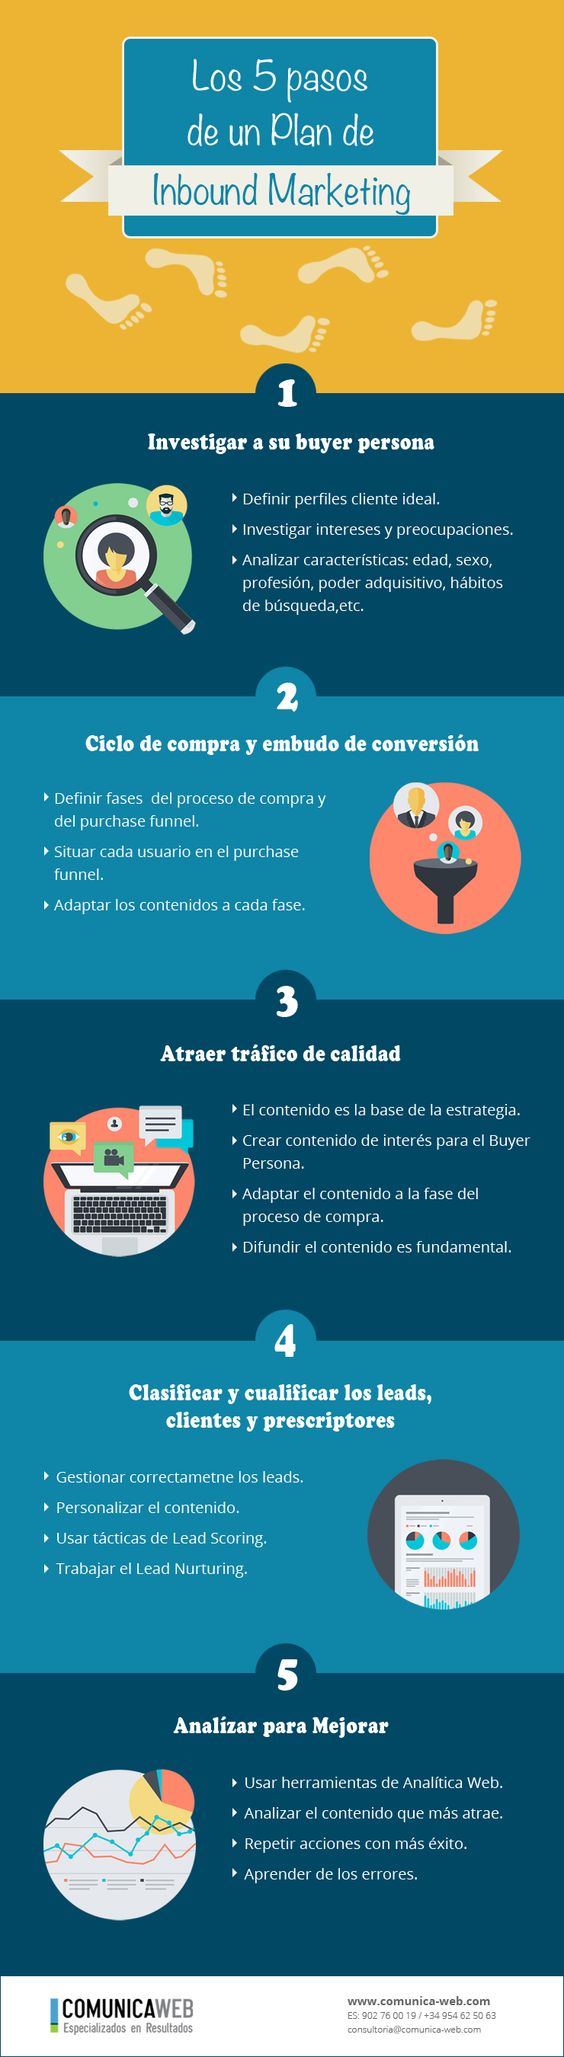 Los cinco pasos de un plan de Inbound Marketing. Infografía en español. #MarketingDigital #InboundMarketing #Infografia #CommunityManager